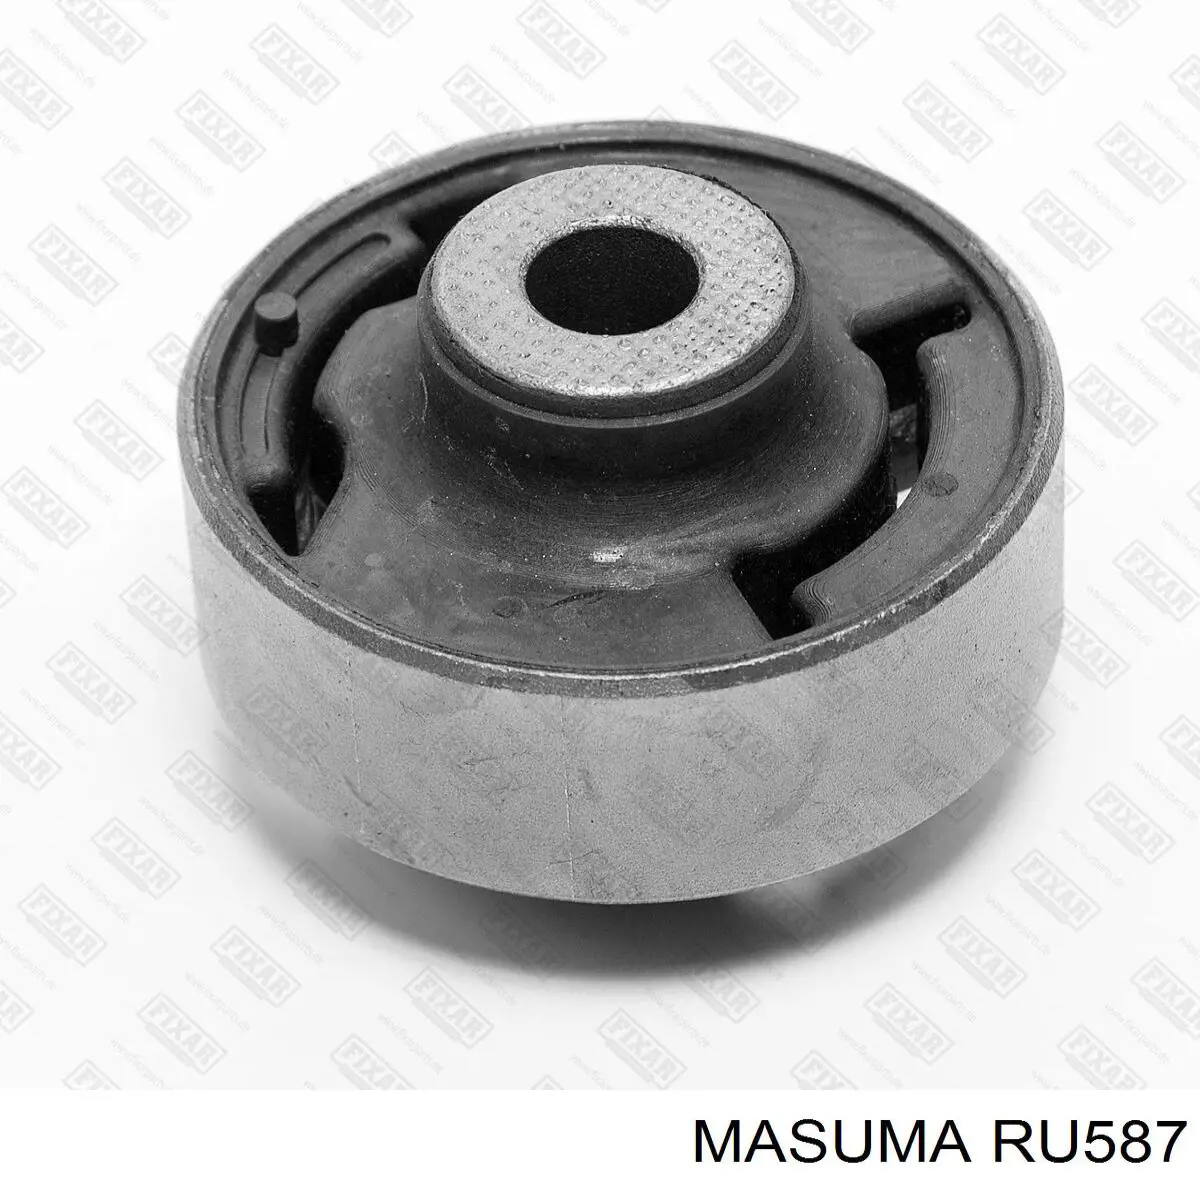 RU587 Masuma silentblock de suspensión delantero inferior